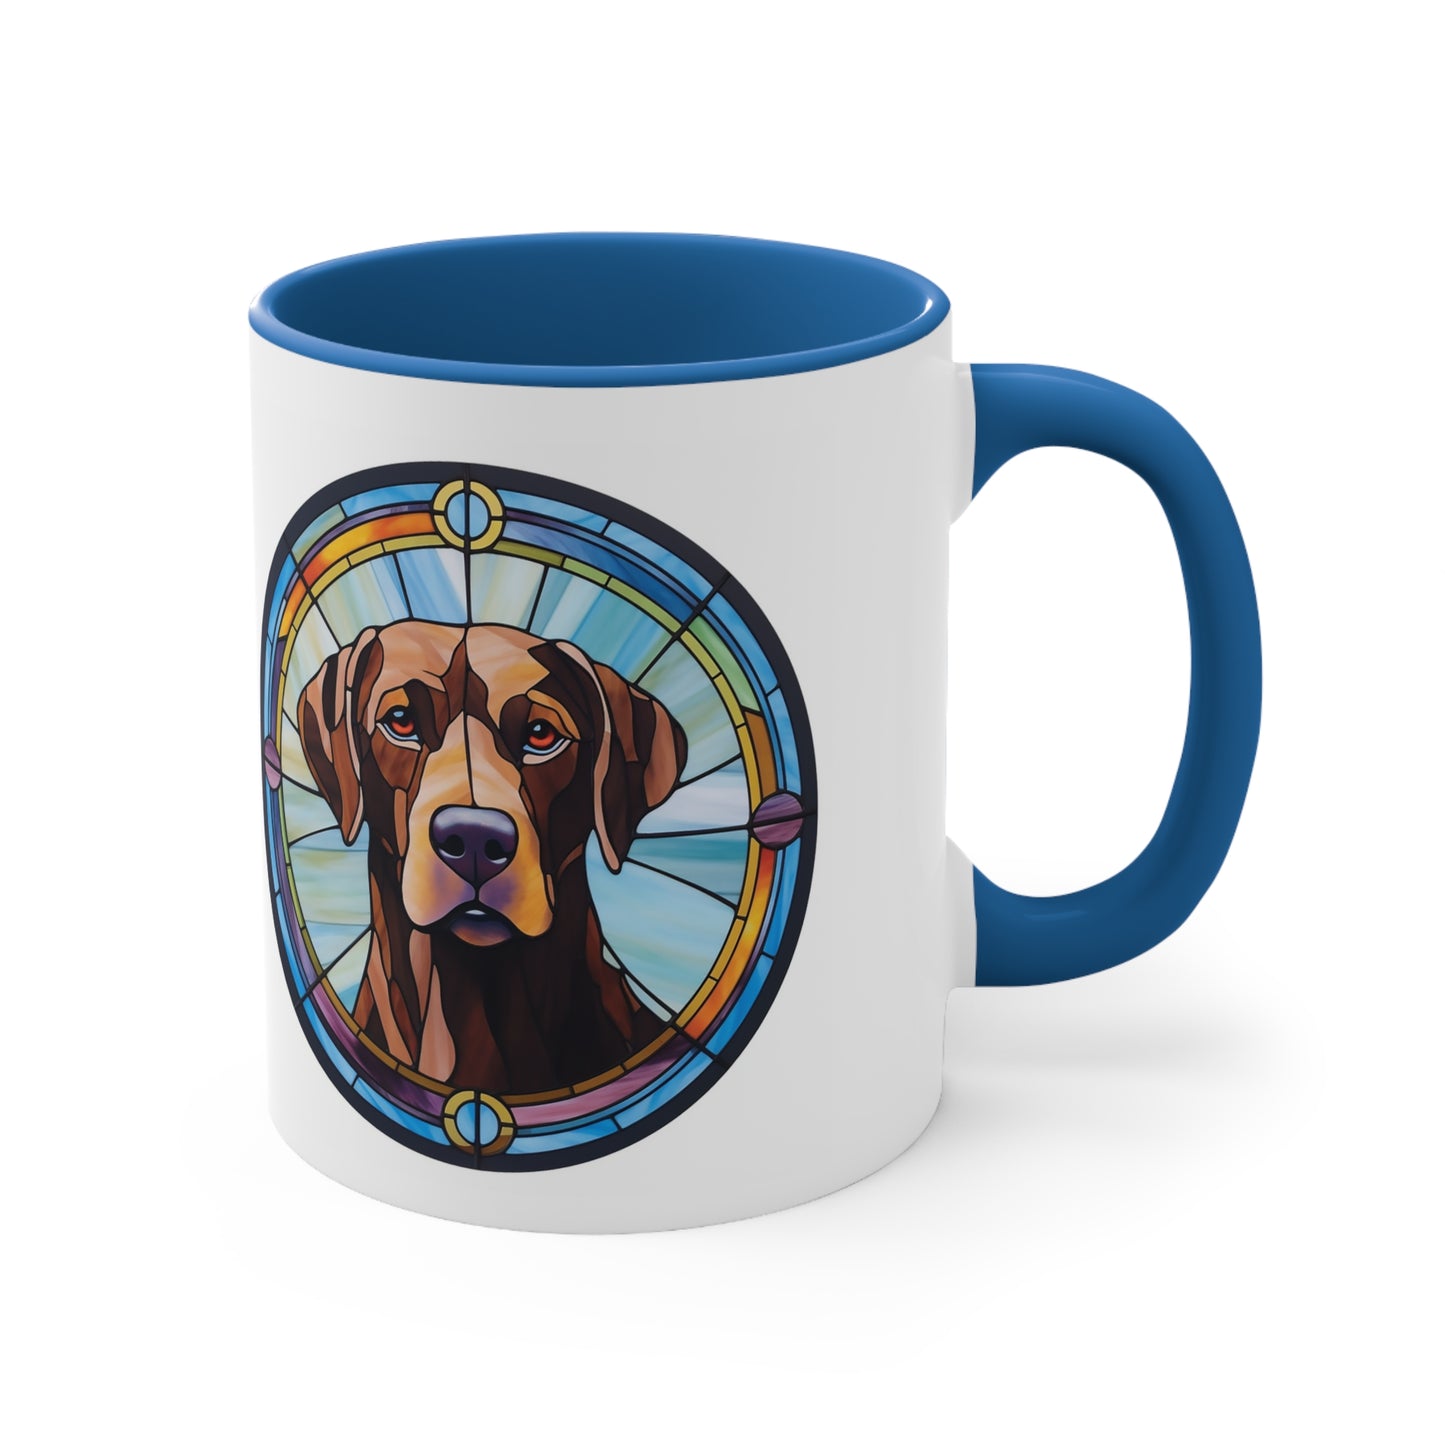 LABRADOR RETRIEVER MUG - Dog Breeds Mugs - Red, Black, Pink, Blue and Navy - Free Shipping